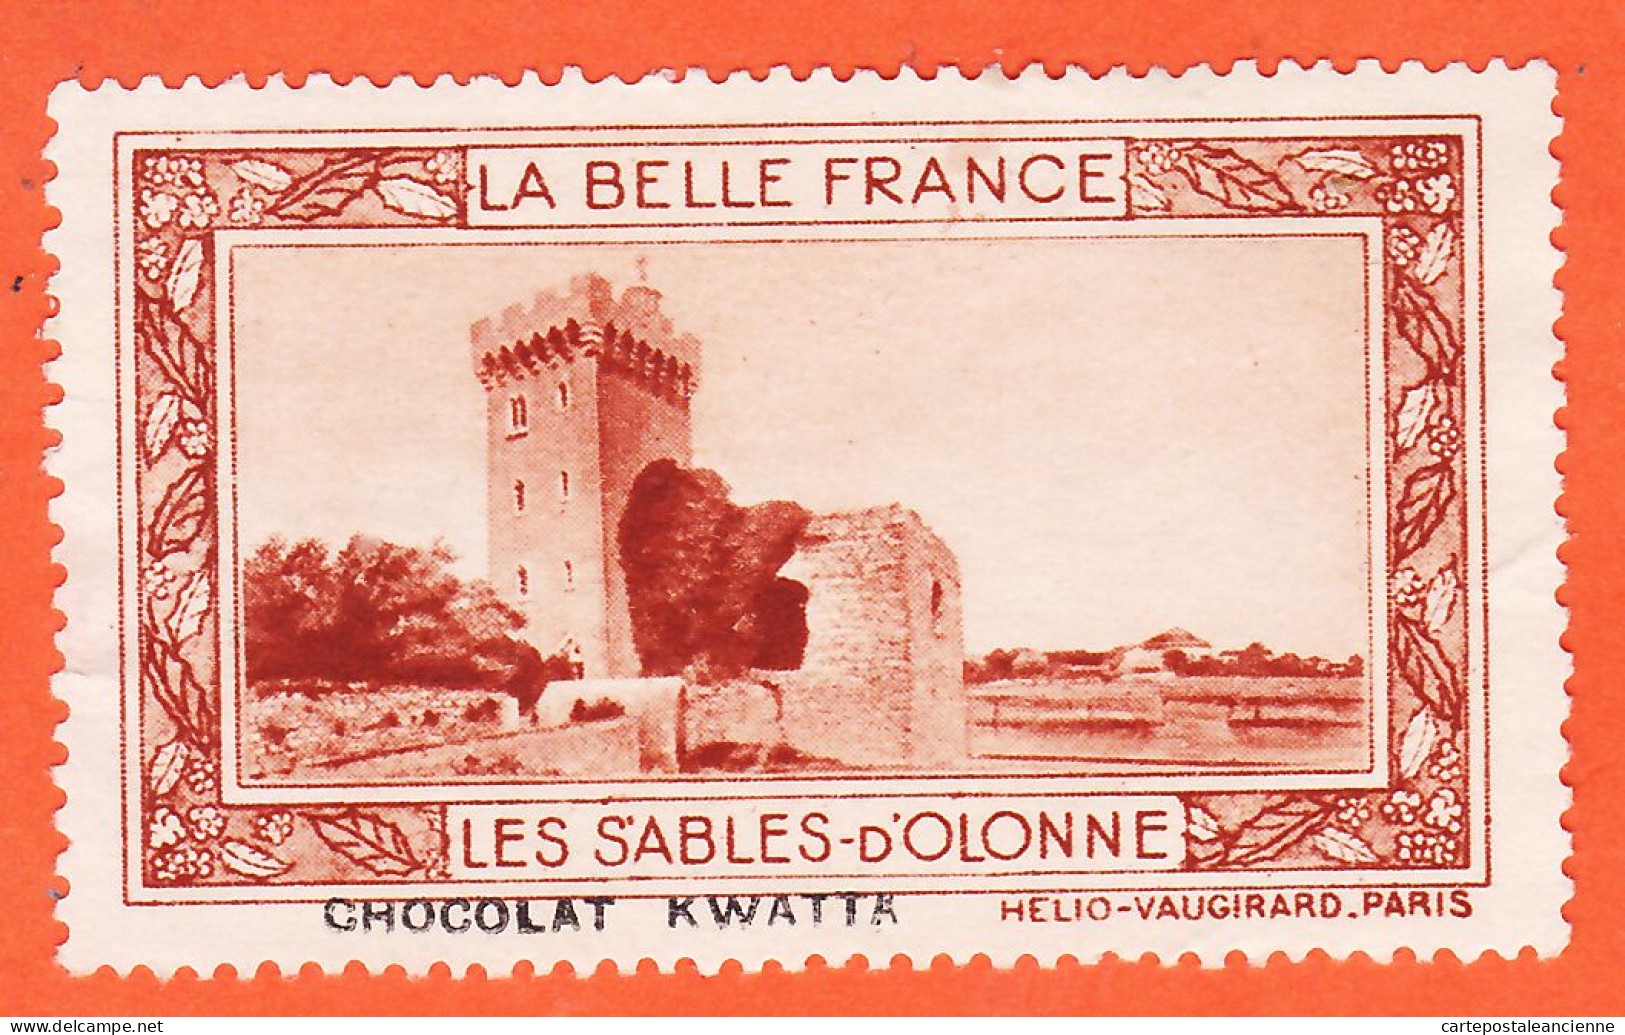 00166 ● LES SABLES-OLONNES 85-Vendée Pub Chocolat KWATTA Vignette Collection BELLE FRANCE HELIO-VAUGIRARD Erinnophilie - Tourisme (Vignettes)